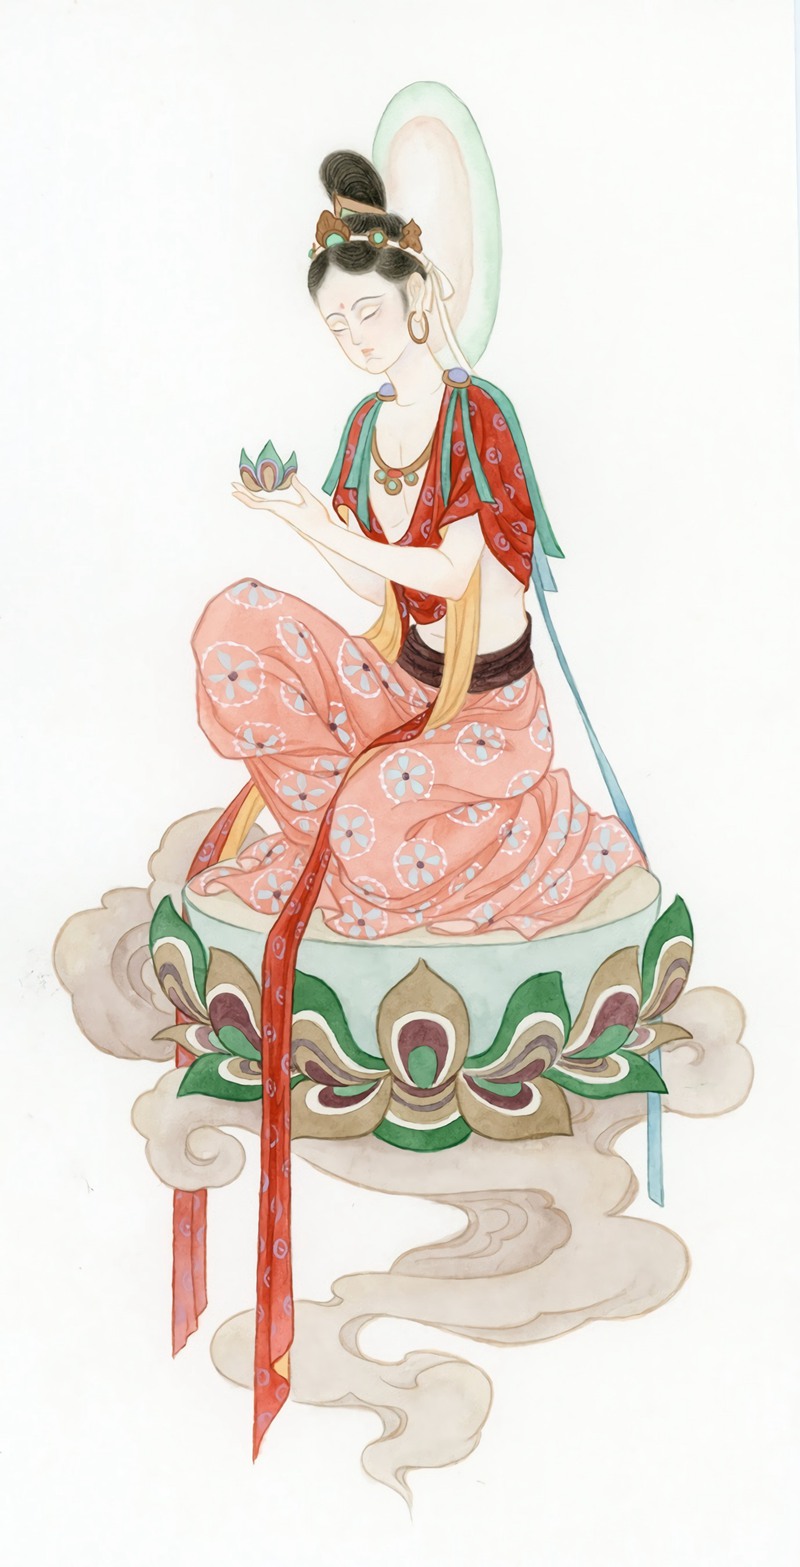 佛教壁画风格的人物手绘美图